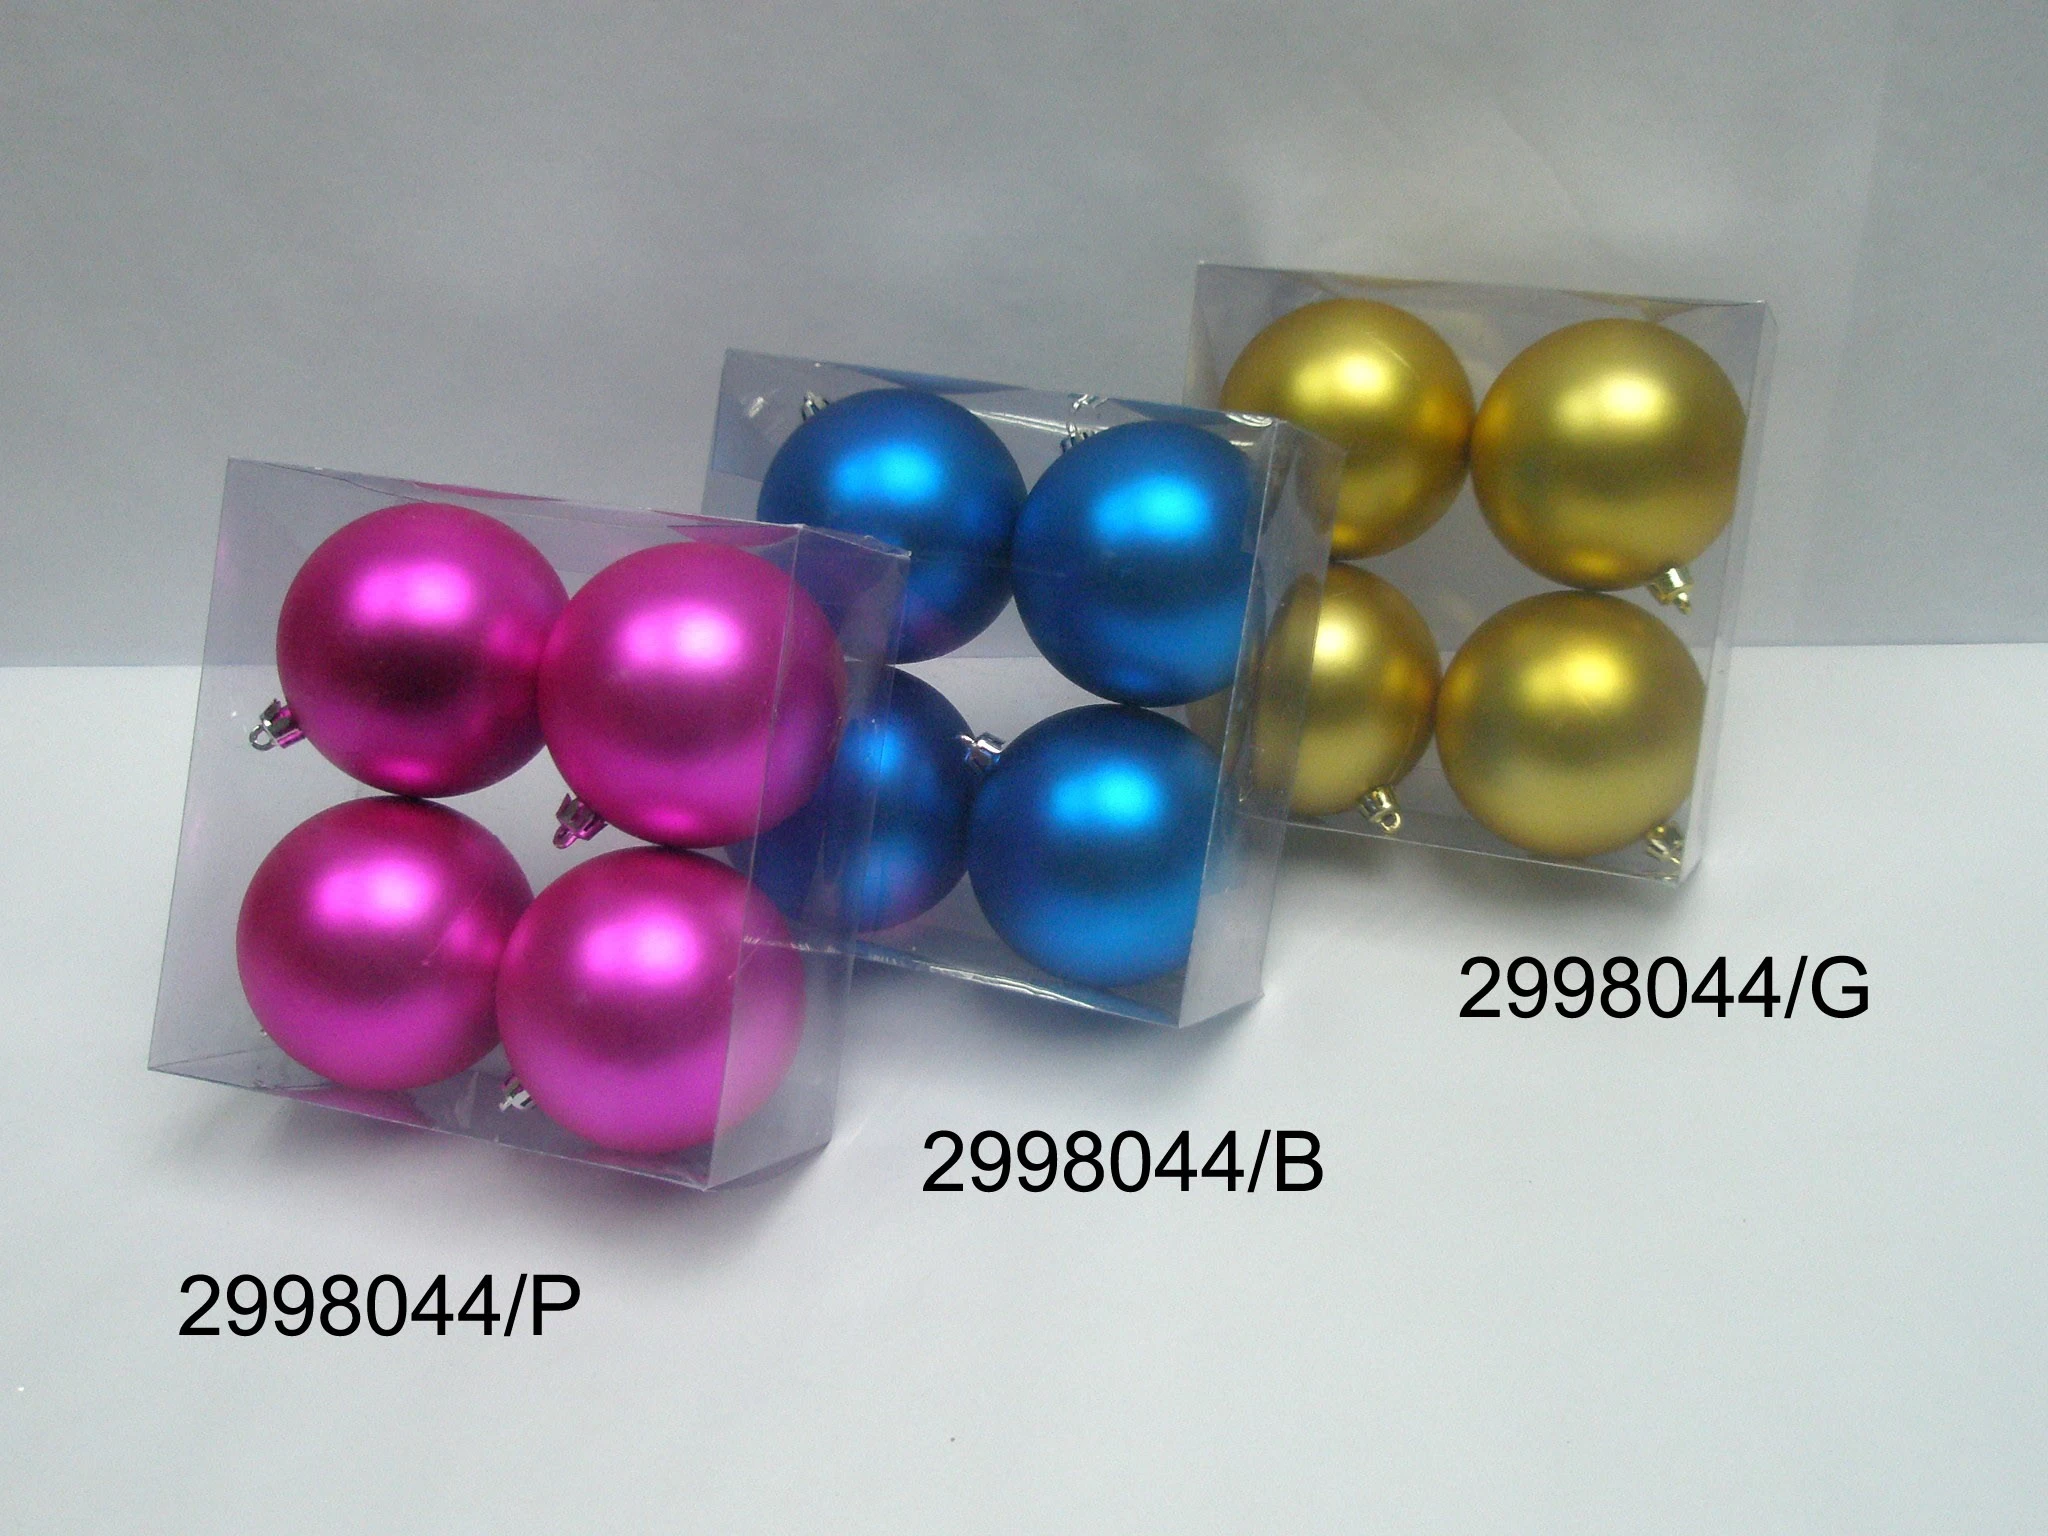 中国 耐用的塑料圣诞树装饰球集 制造商